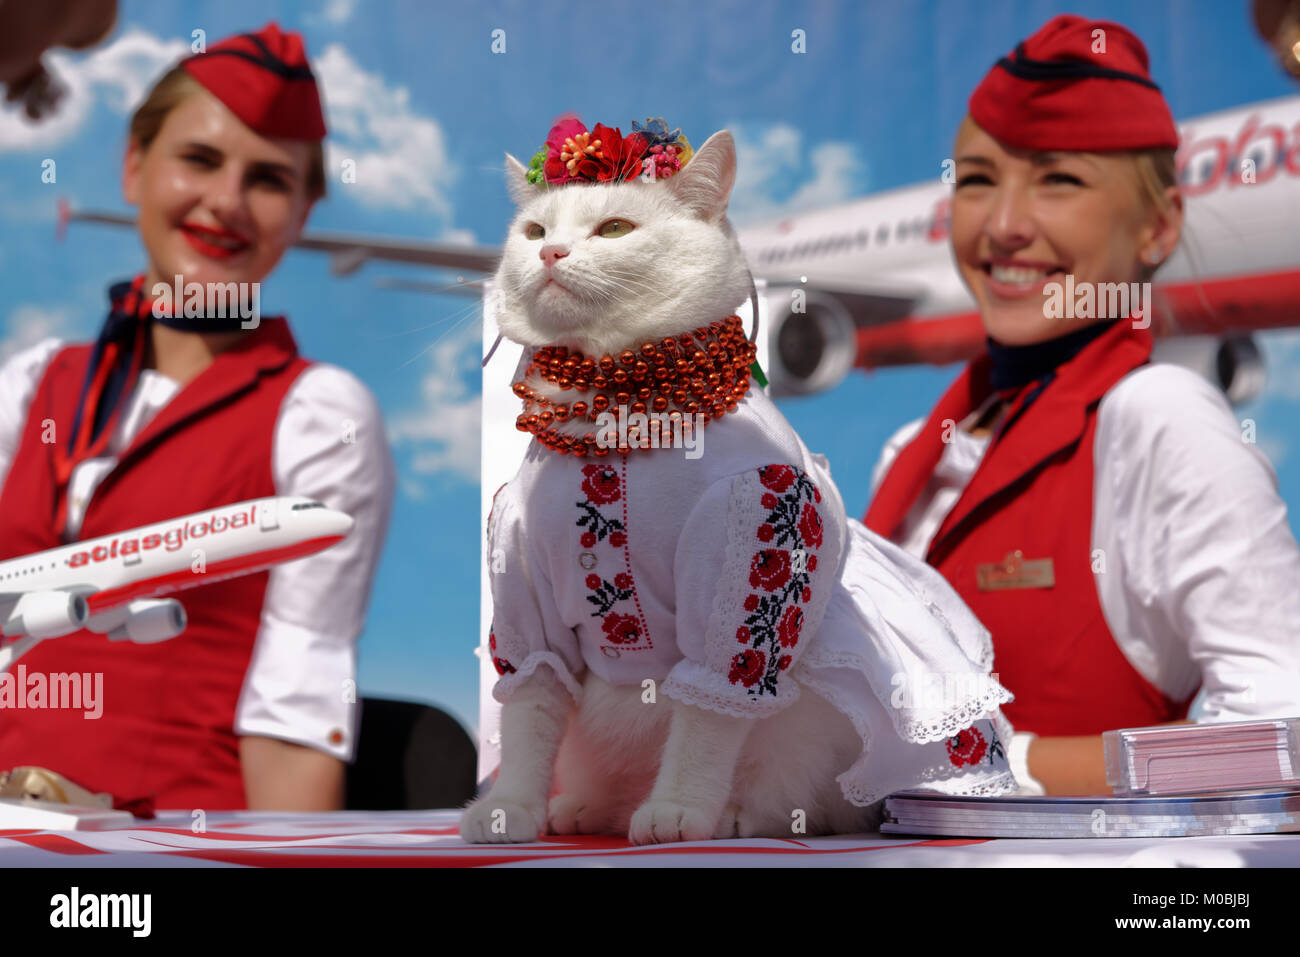 Kiev, Ucraina - 1 ottobre 2016: Gatto bianco vestito in costume nazionale ucraino e headdress fiore in promozione della compagnia aerea turca Atlas Global Foto Stock